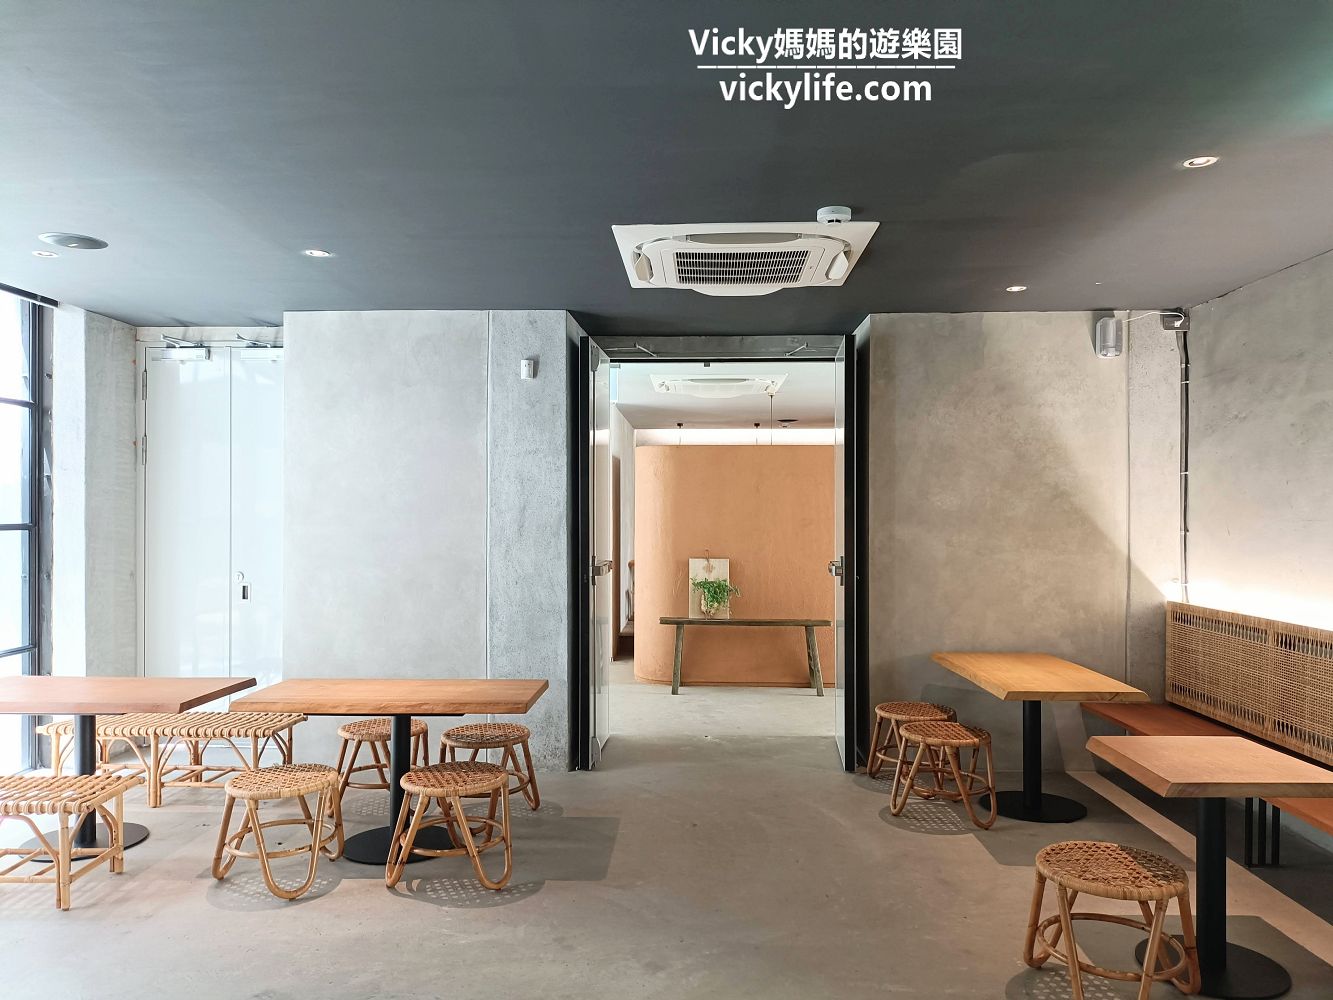 台南文青、森林系 8層樓冰淇淋店︱南埕衖事：每個空間都好拍，空中花園特美